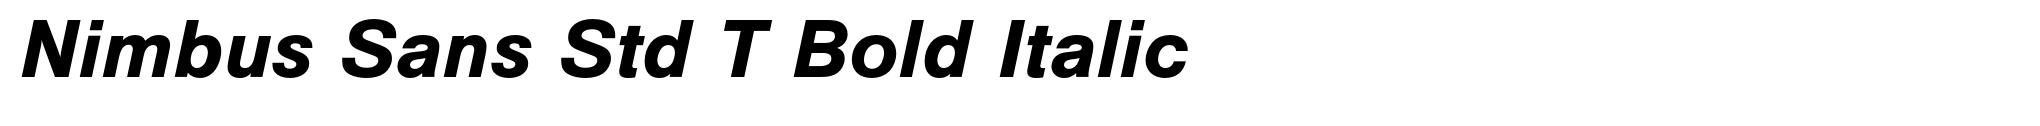 Nimbus Sans Std T Bold Italic image